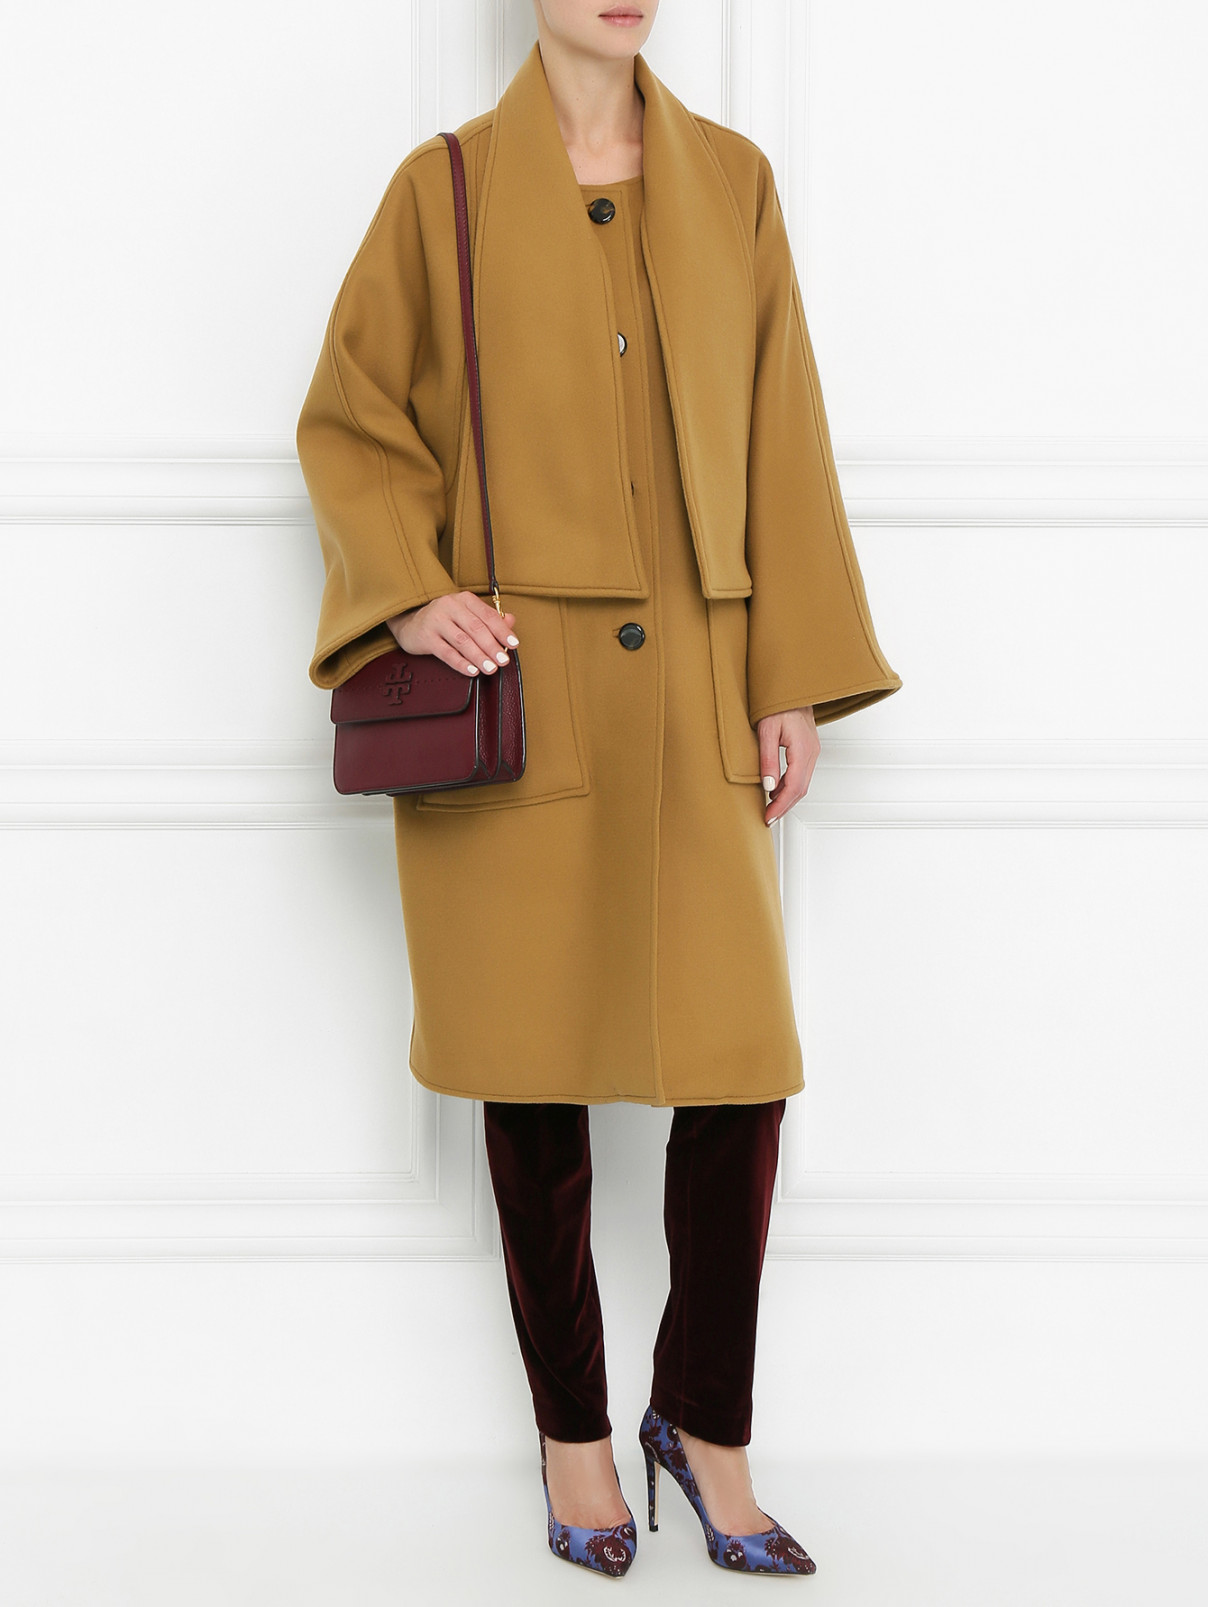 Пальто из шерсти с накладными карманами Tory Burch  –  Модель Общий вид  – Цвет:  Бежевый